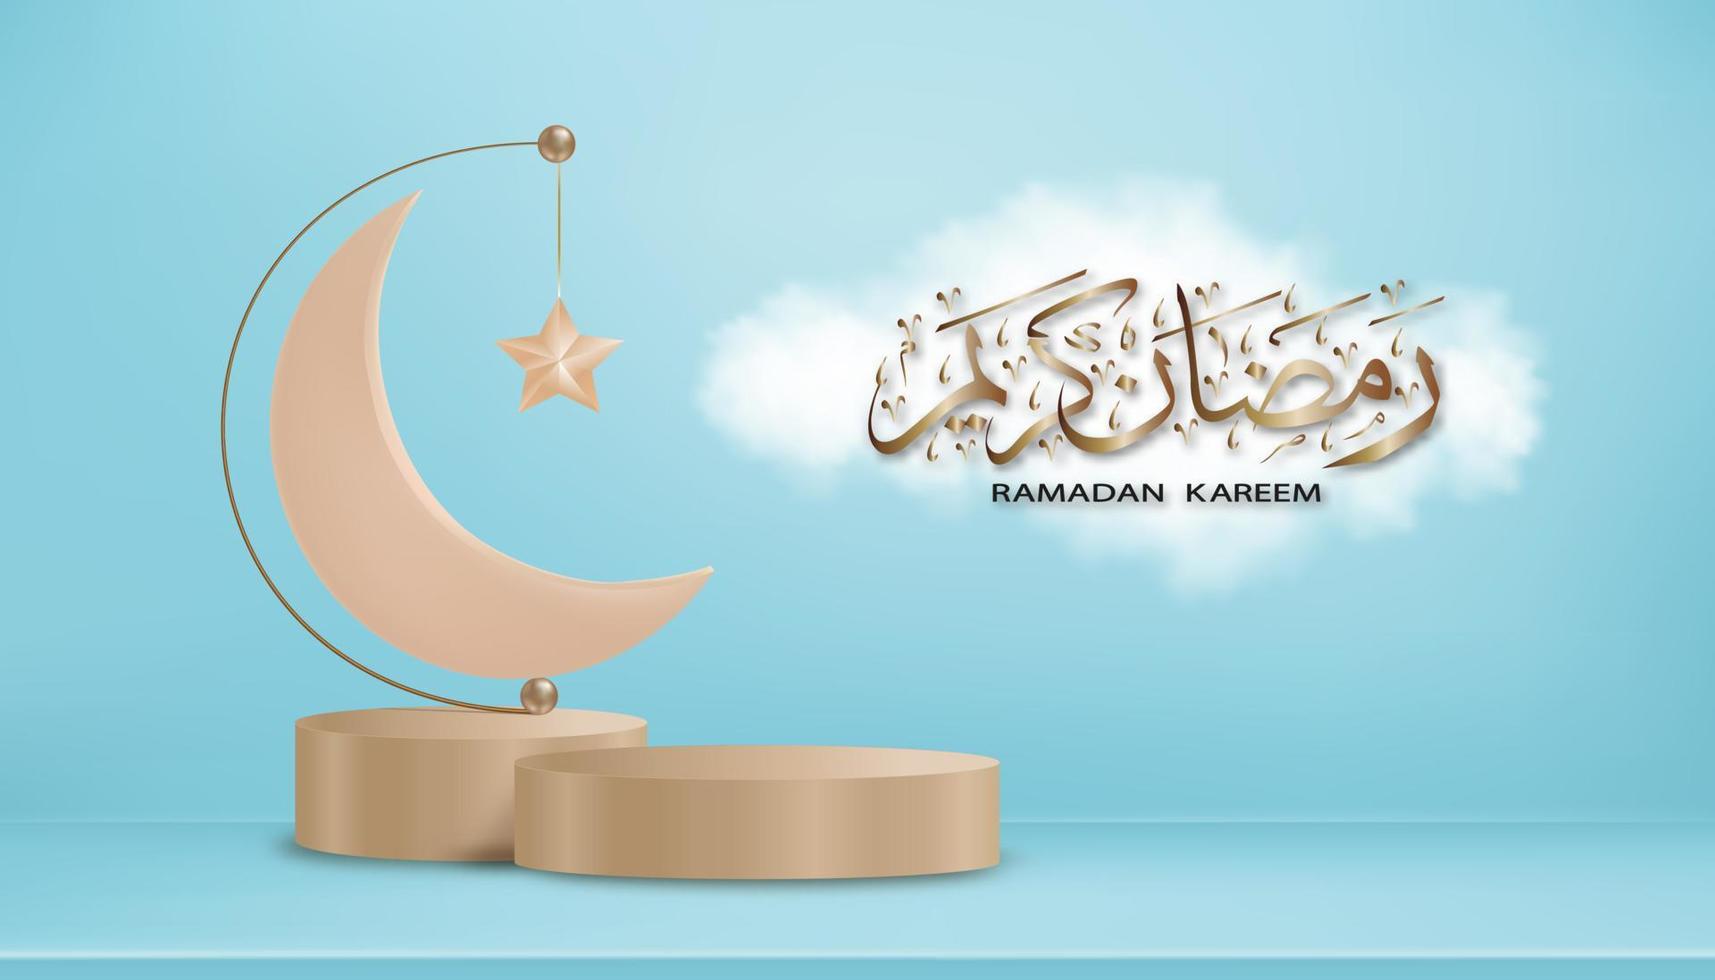 ramadan kareem kalligrafie arabisch auf wolke mit 3d podium, halbmond und stern auf blauem hintergrund, vektorbanner für islamisch, muslimischer religionsmonat symbolisch für eid al fitr, eid al adha, eid mubarak vektor